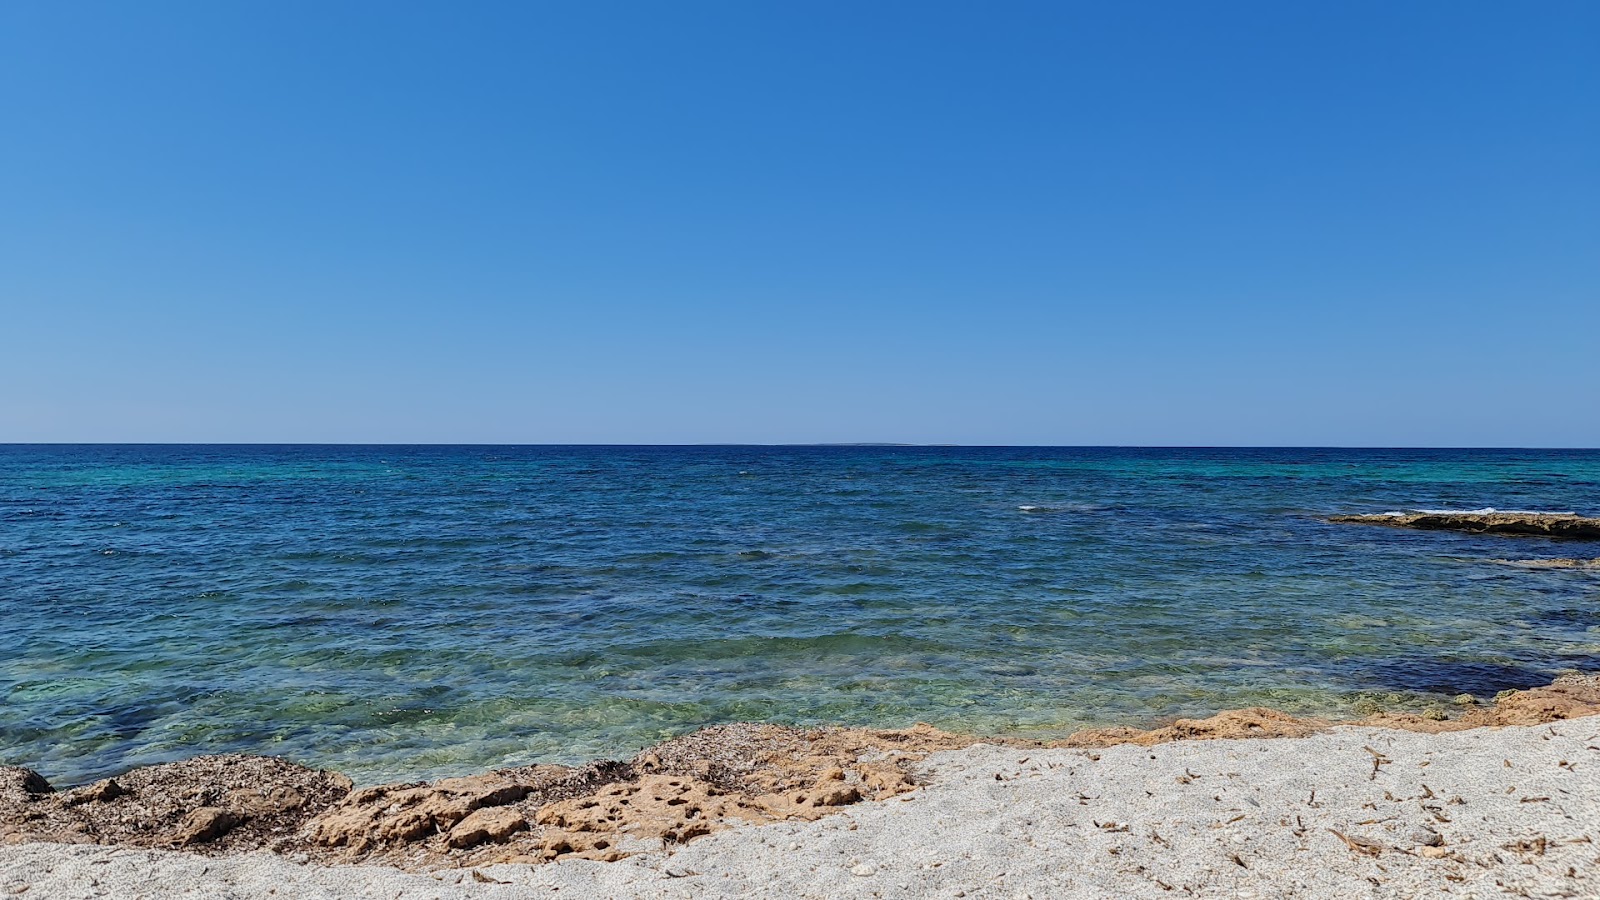 Fotografija Spiaggia le Saline nahaja se v naravnem okolju